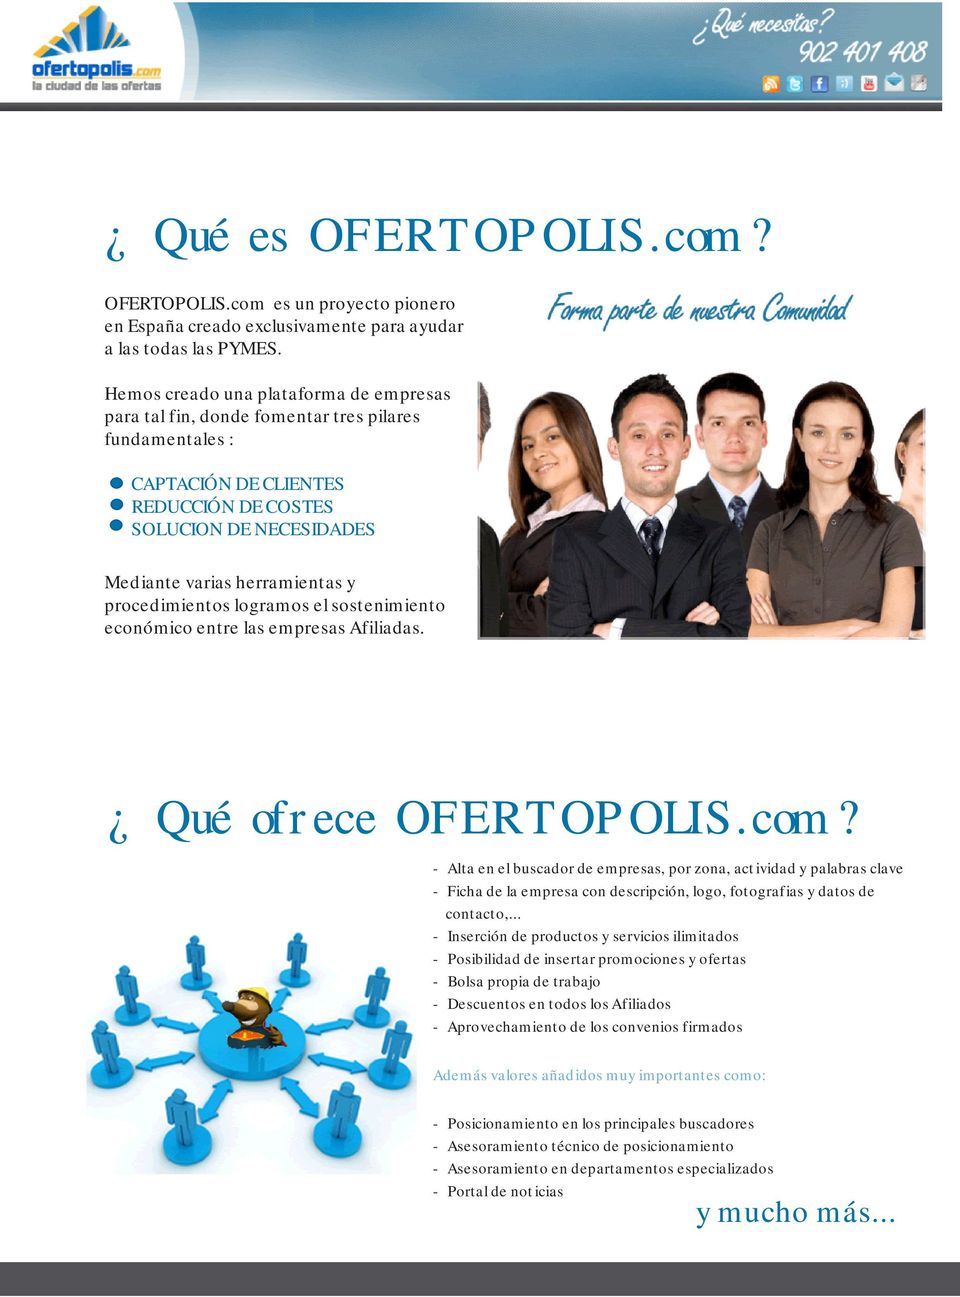 procedimientos logramos el sostenimiento económico entre las empresas Afiliadas. Qué ofrece OFERTOPOLIS.com?